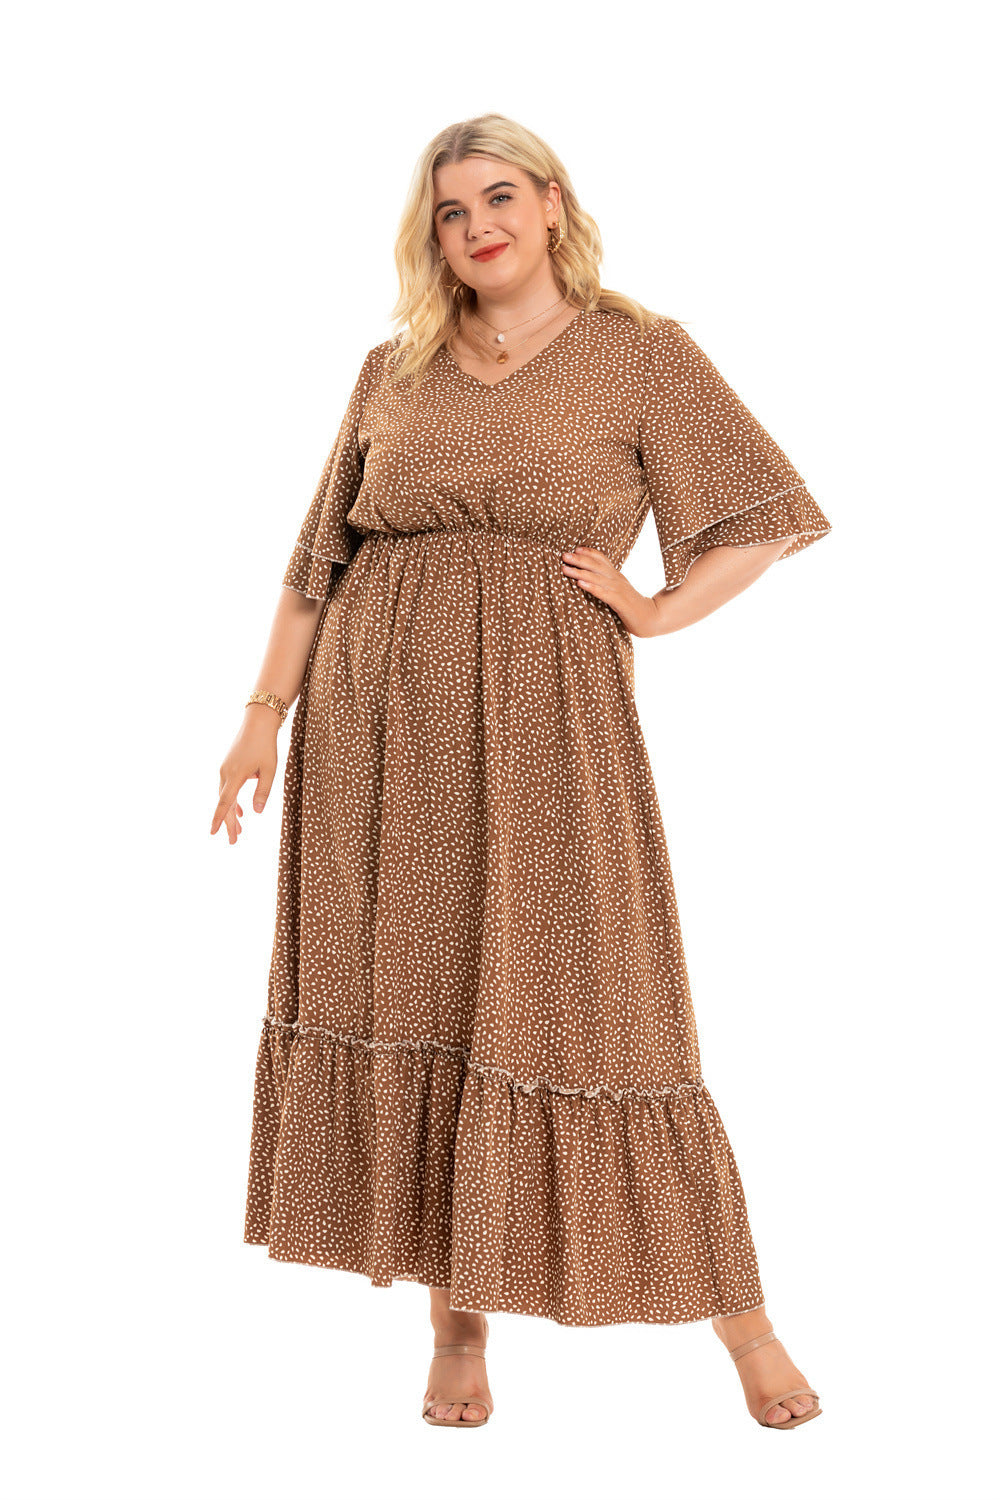 Dress  | Bohemian Plus Size Women's Fashion Polka Dot Dress Women | |  | thecurvestory.myshopify.com